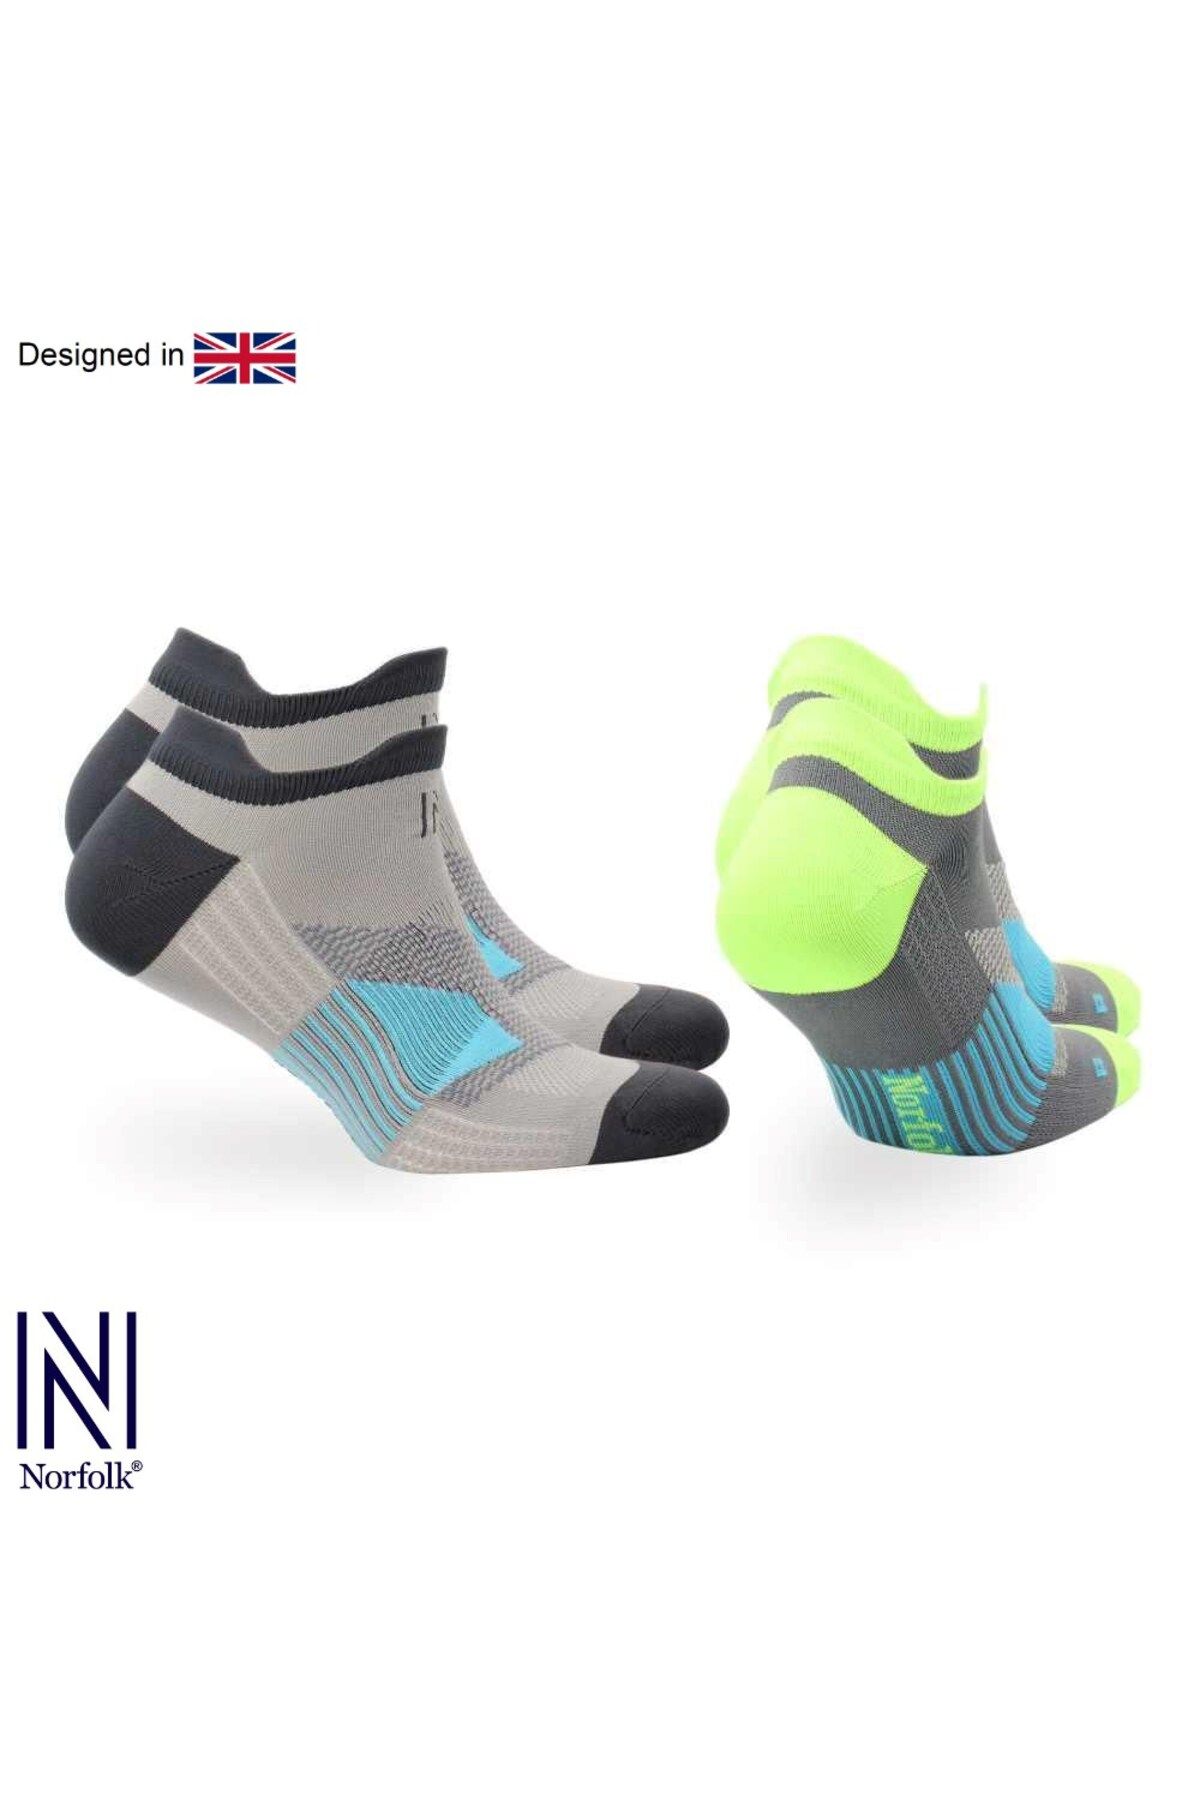 Norfolk THOMAS Ultra Hafif Koşu Yürüyüş ve Spor Çorabı 2'li Paket